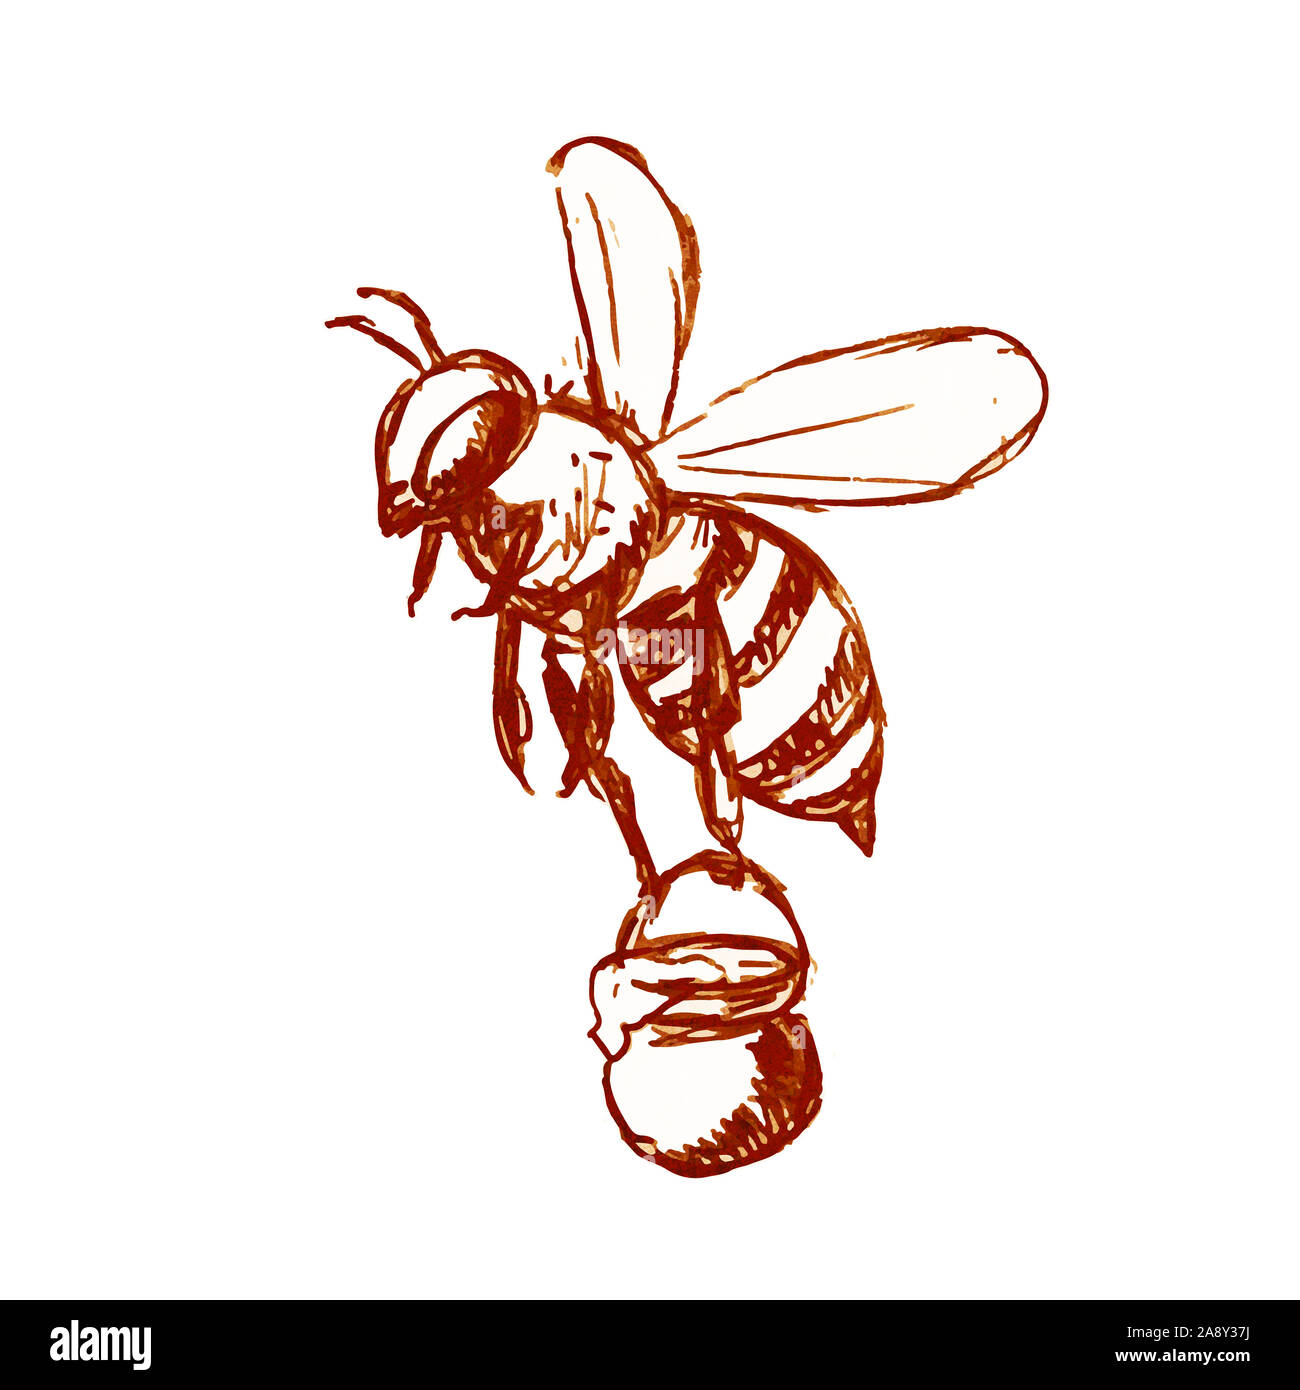 Croquis dessin illustration style d'abeille portant un seau de miel flying  fait en noir et blanc sur fond isolé Photo Stock - Alamy